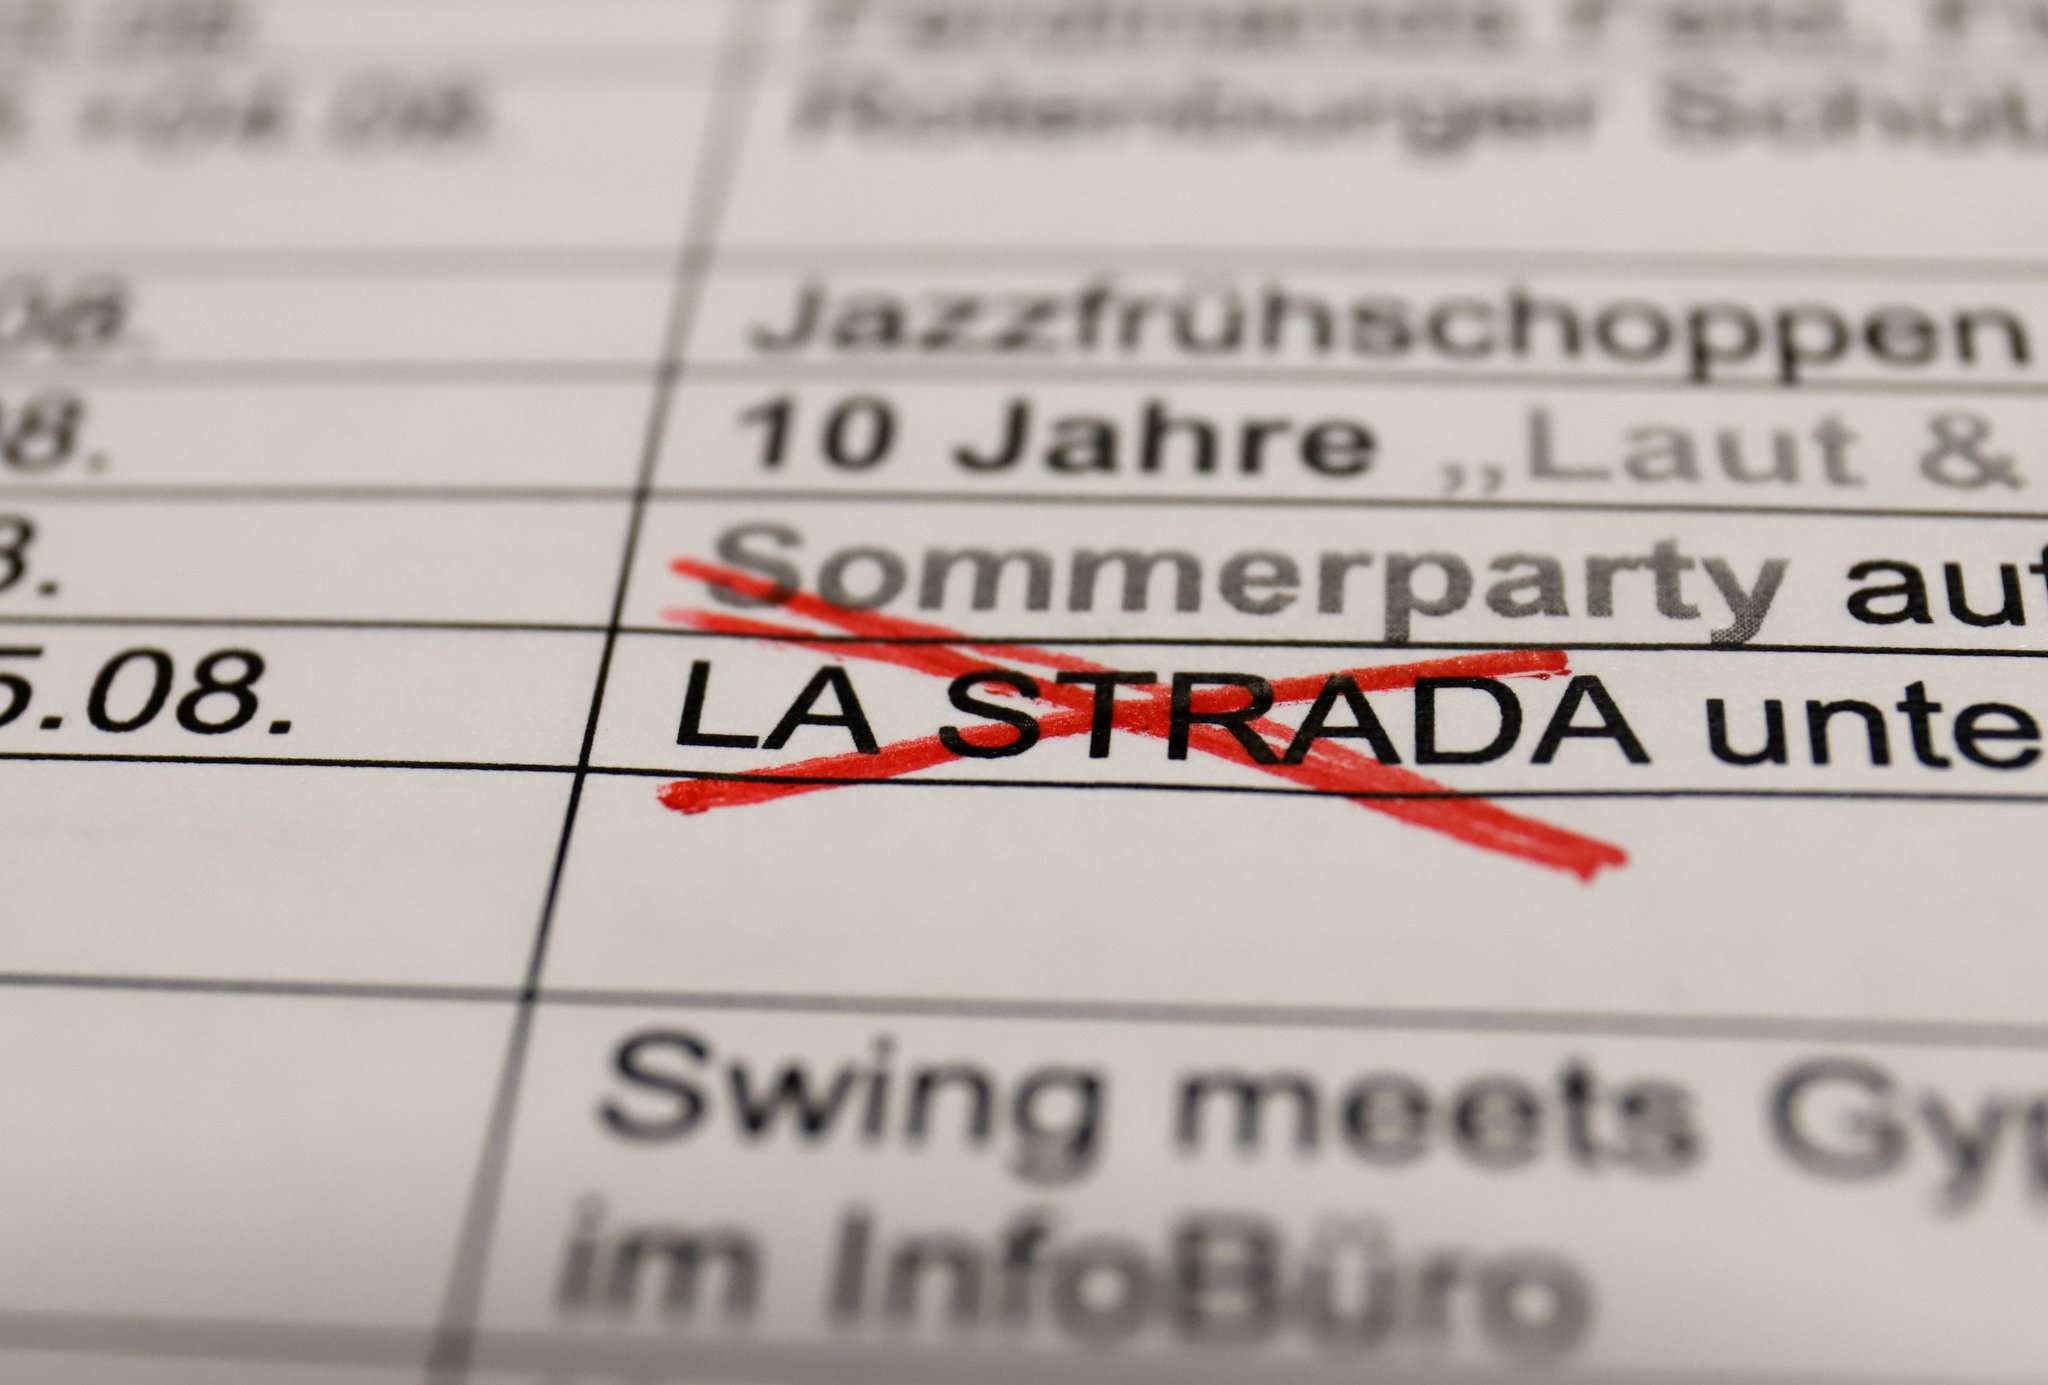 Noch steht das Straßenfestival La Strada im Kulturkalender der Stadt Rotenburg u2013 doch aller Voraussicht nach muss die Veranstaltung bald gestrichen werden. 